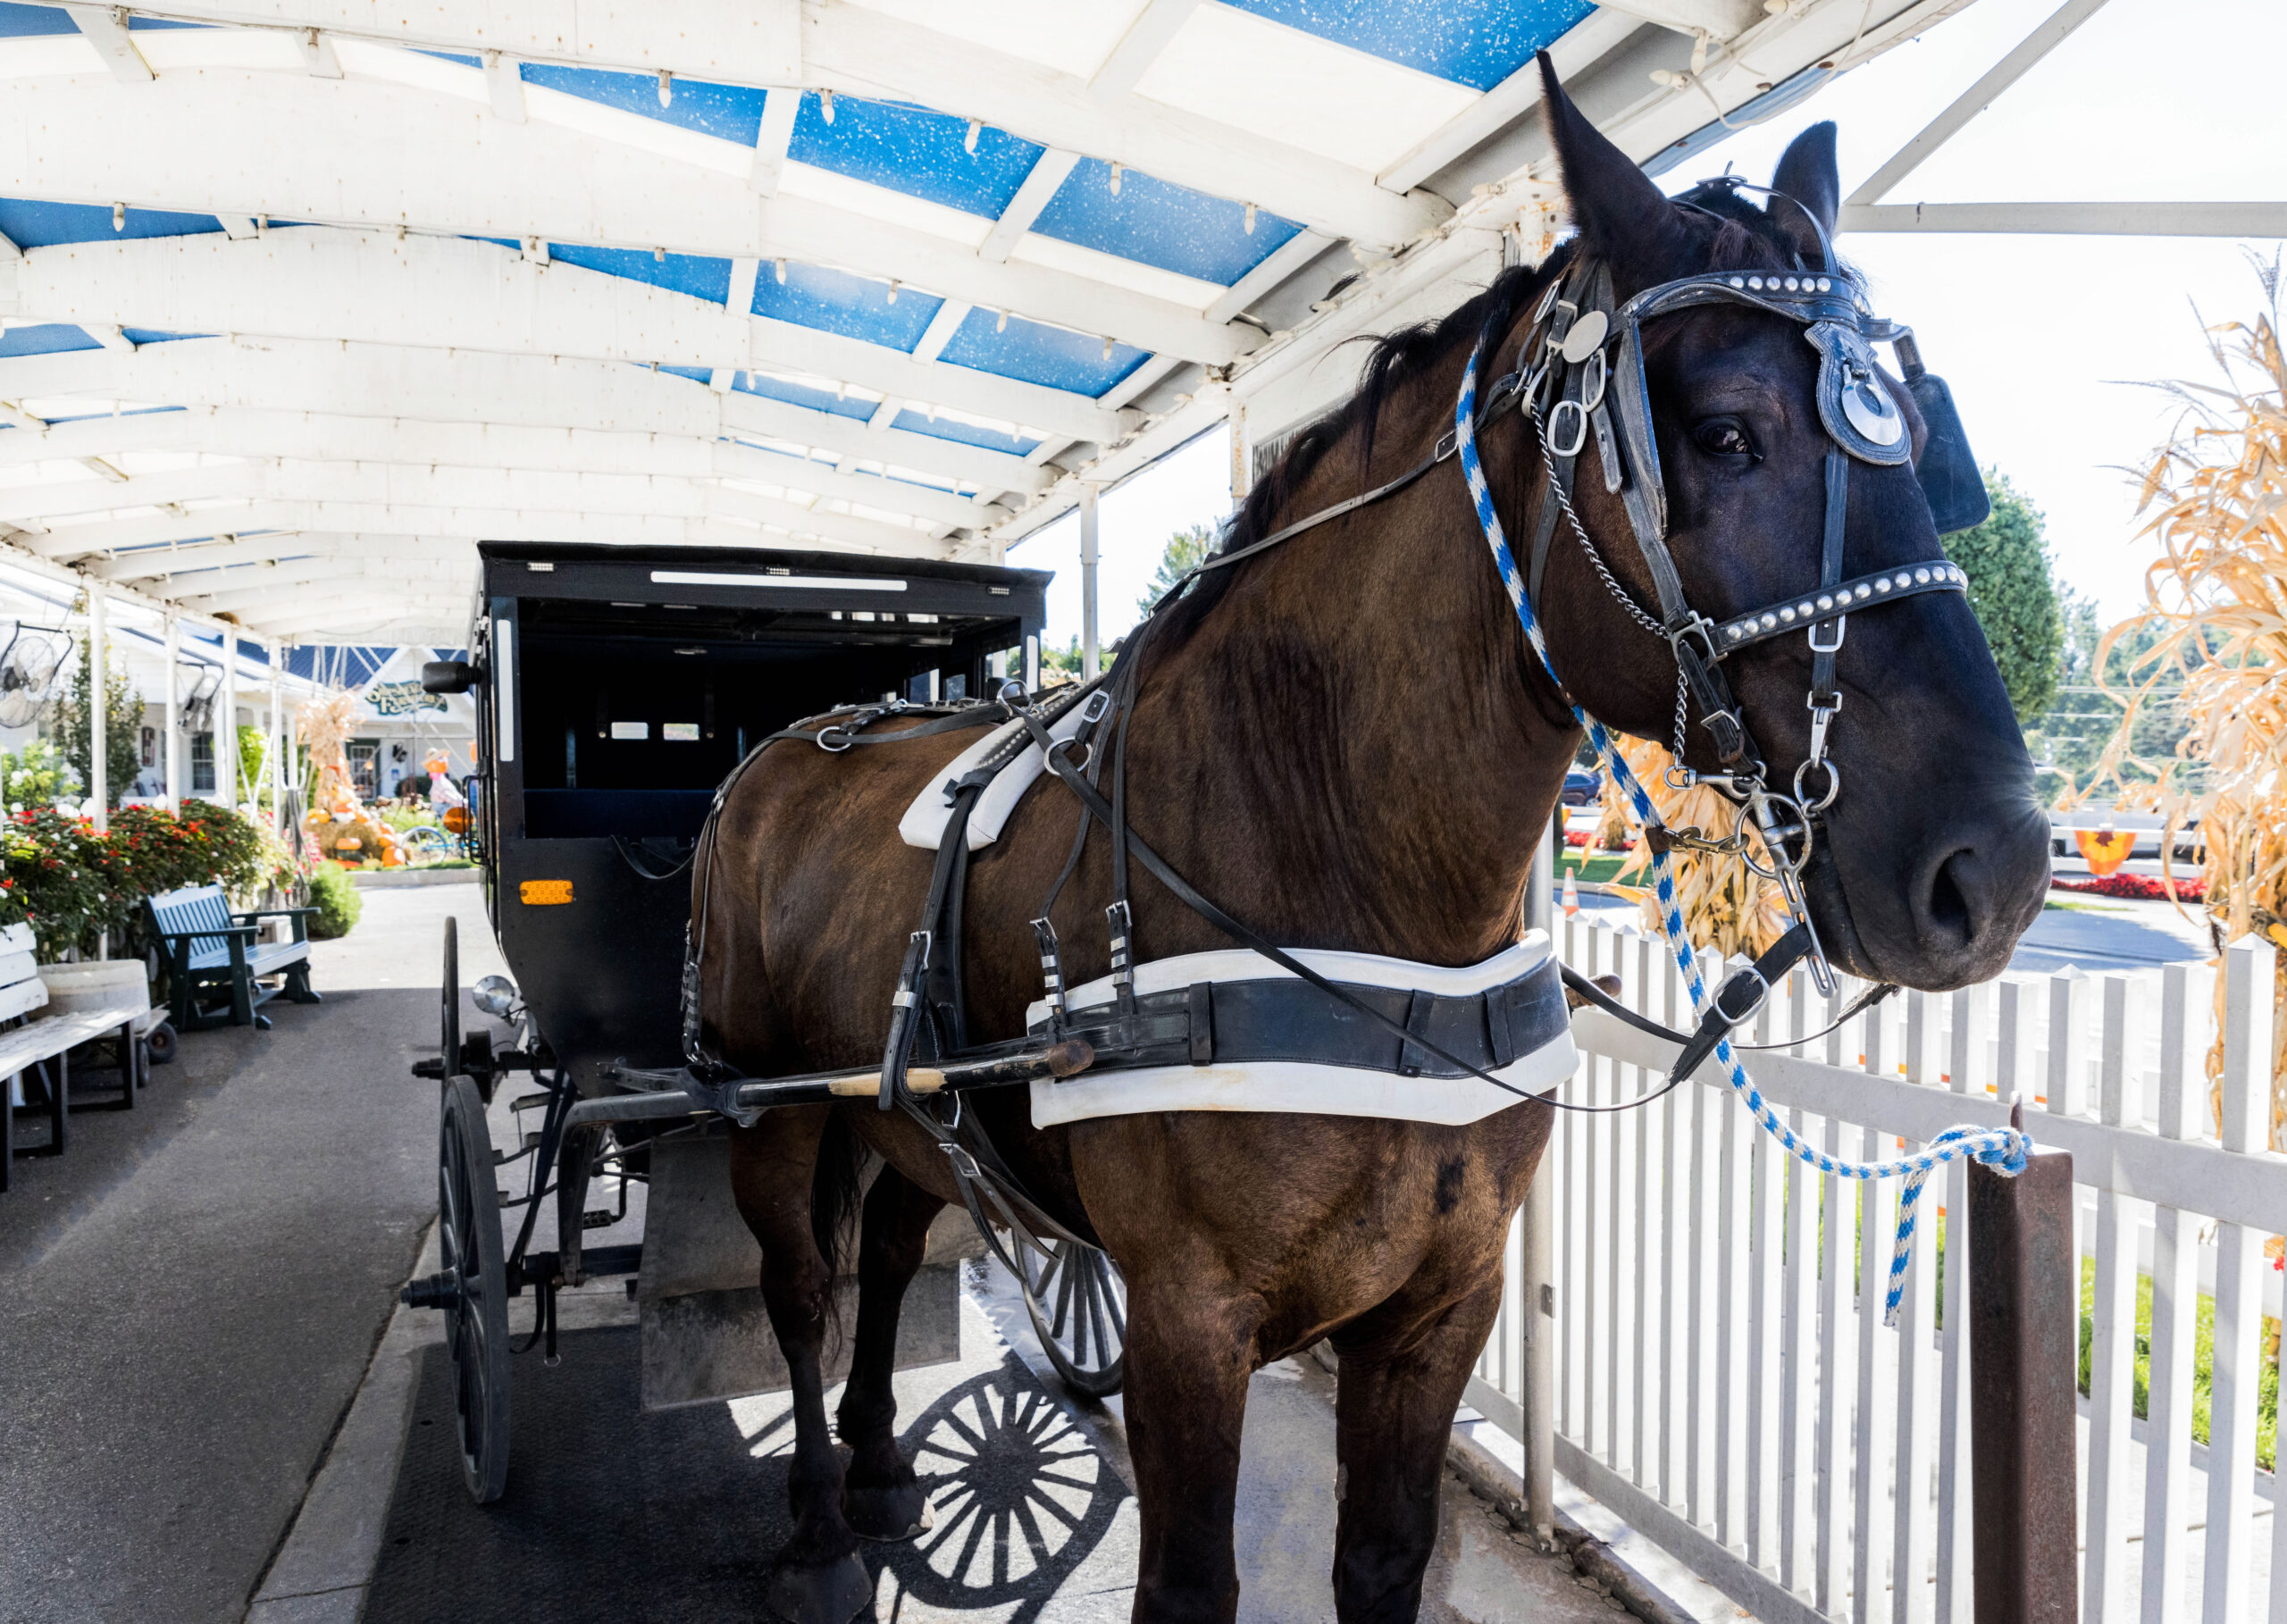 Amish Buggy Rides: The Best Way to Enjoy Shipshewana